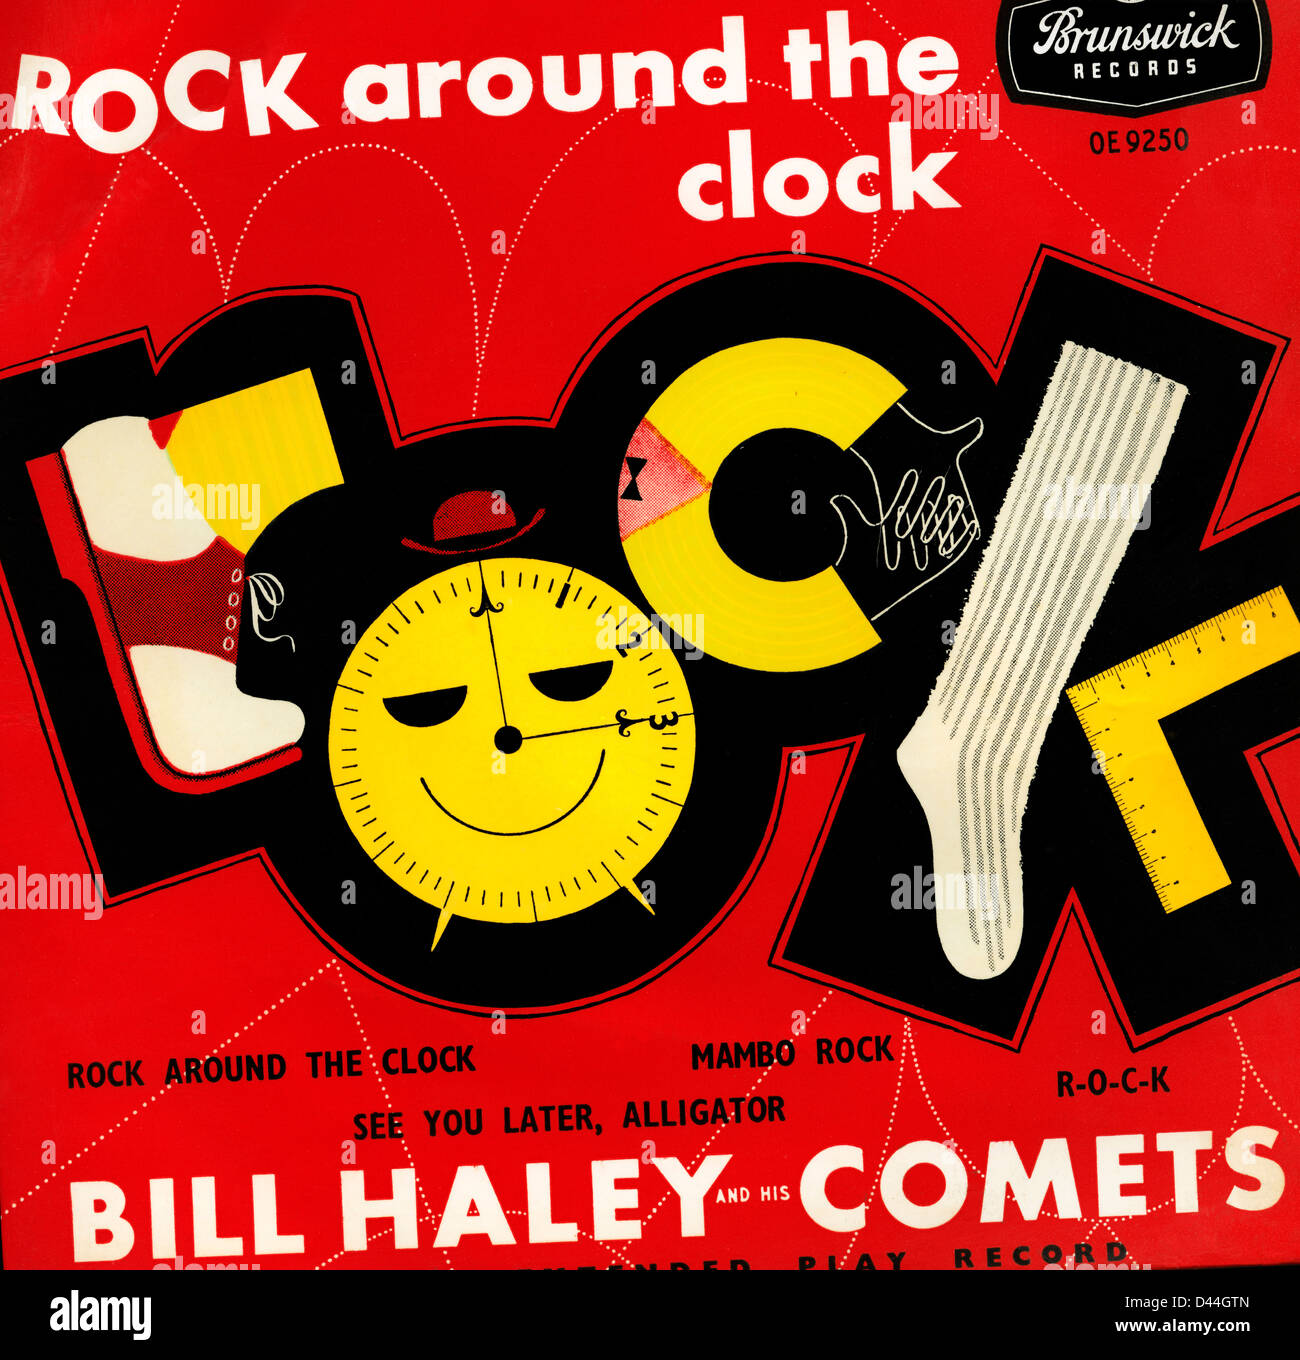 solamente igualdad intimidad Rock alrededor del reloj' en 45 rpm para la portada del álbum número uno  hit 1954 canciones de rock and roll grabado por Bill Haley y los cometas " Rock alrededor del reloj